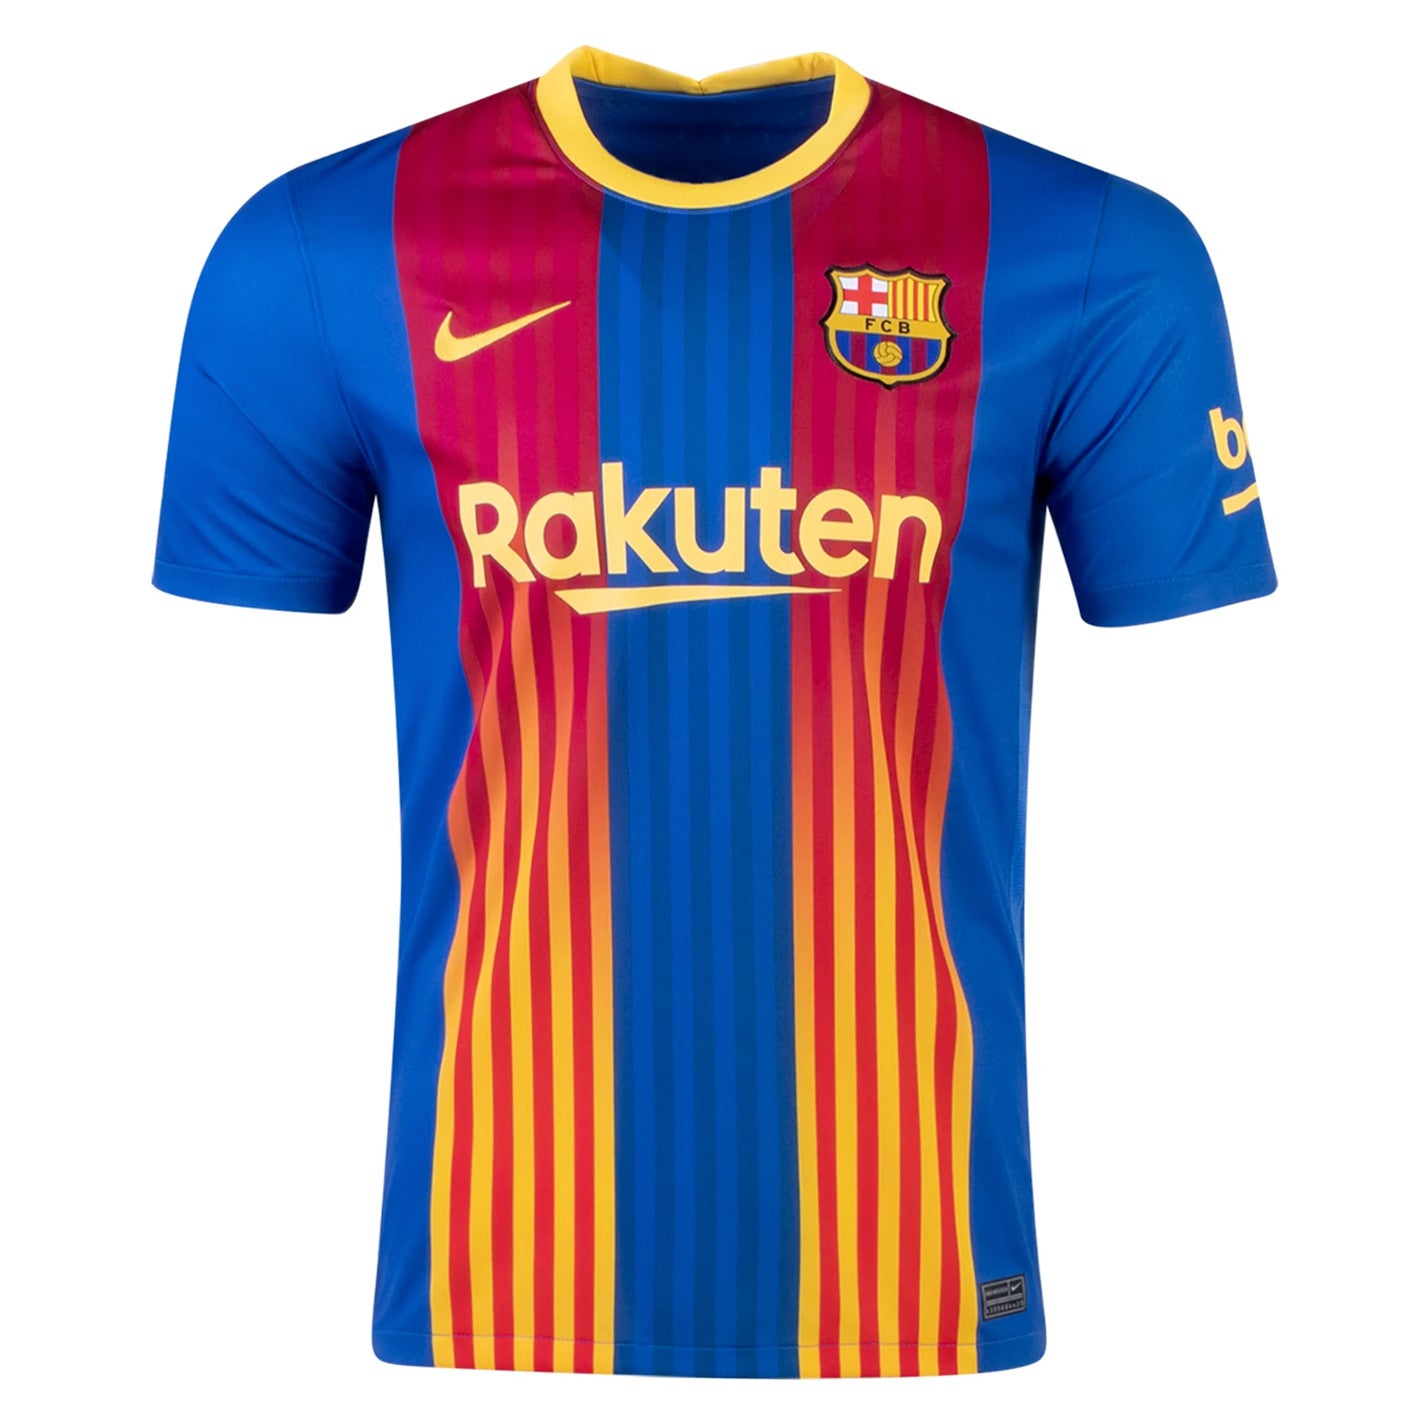 Barcelona El Clasico 2021 Special Edition Jersey –